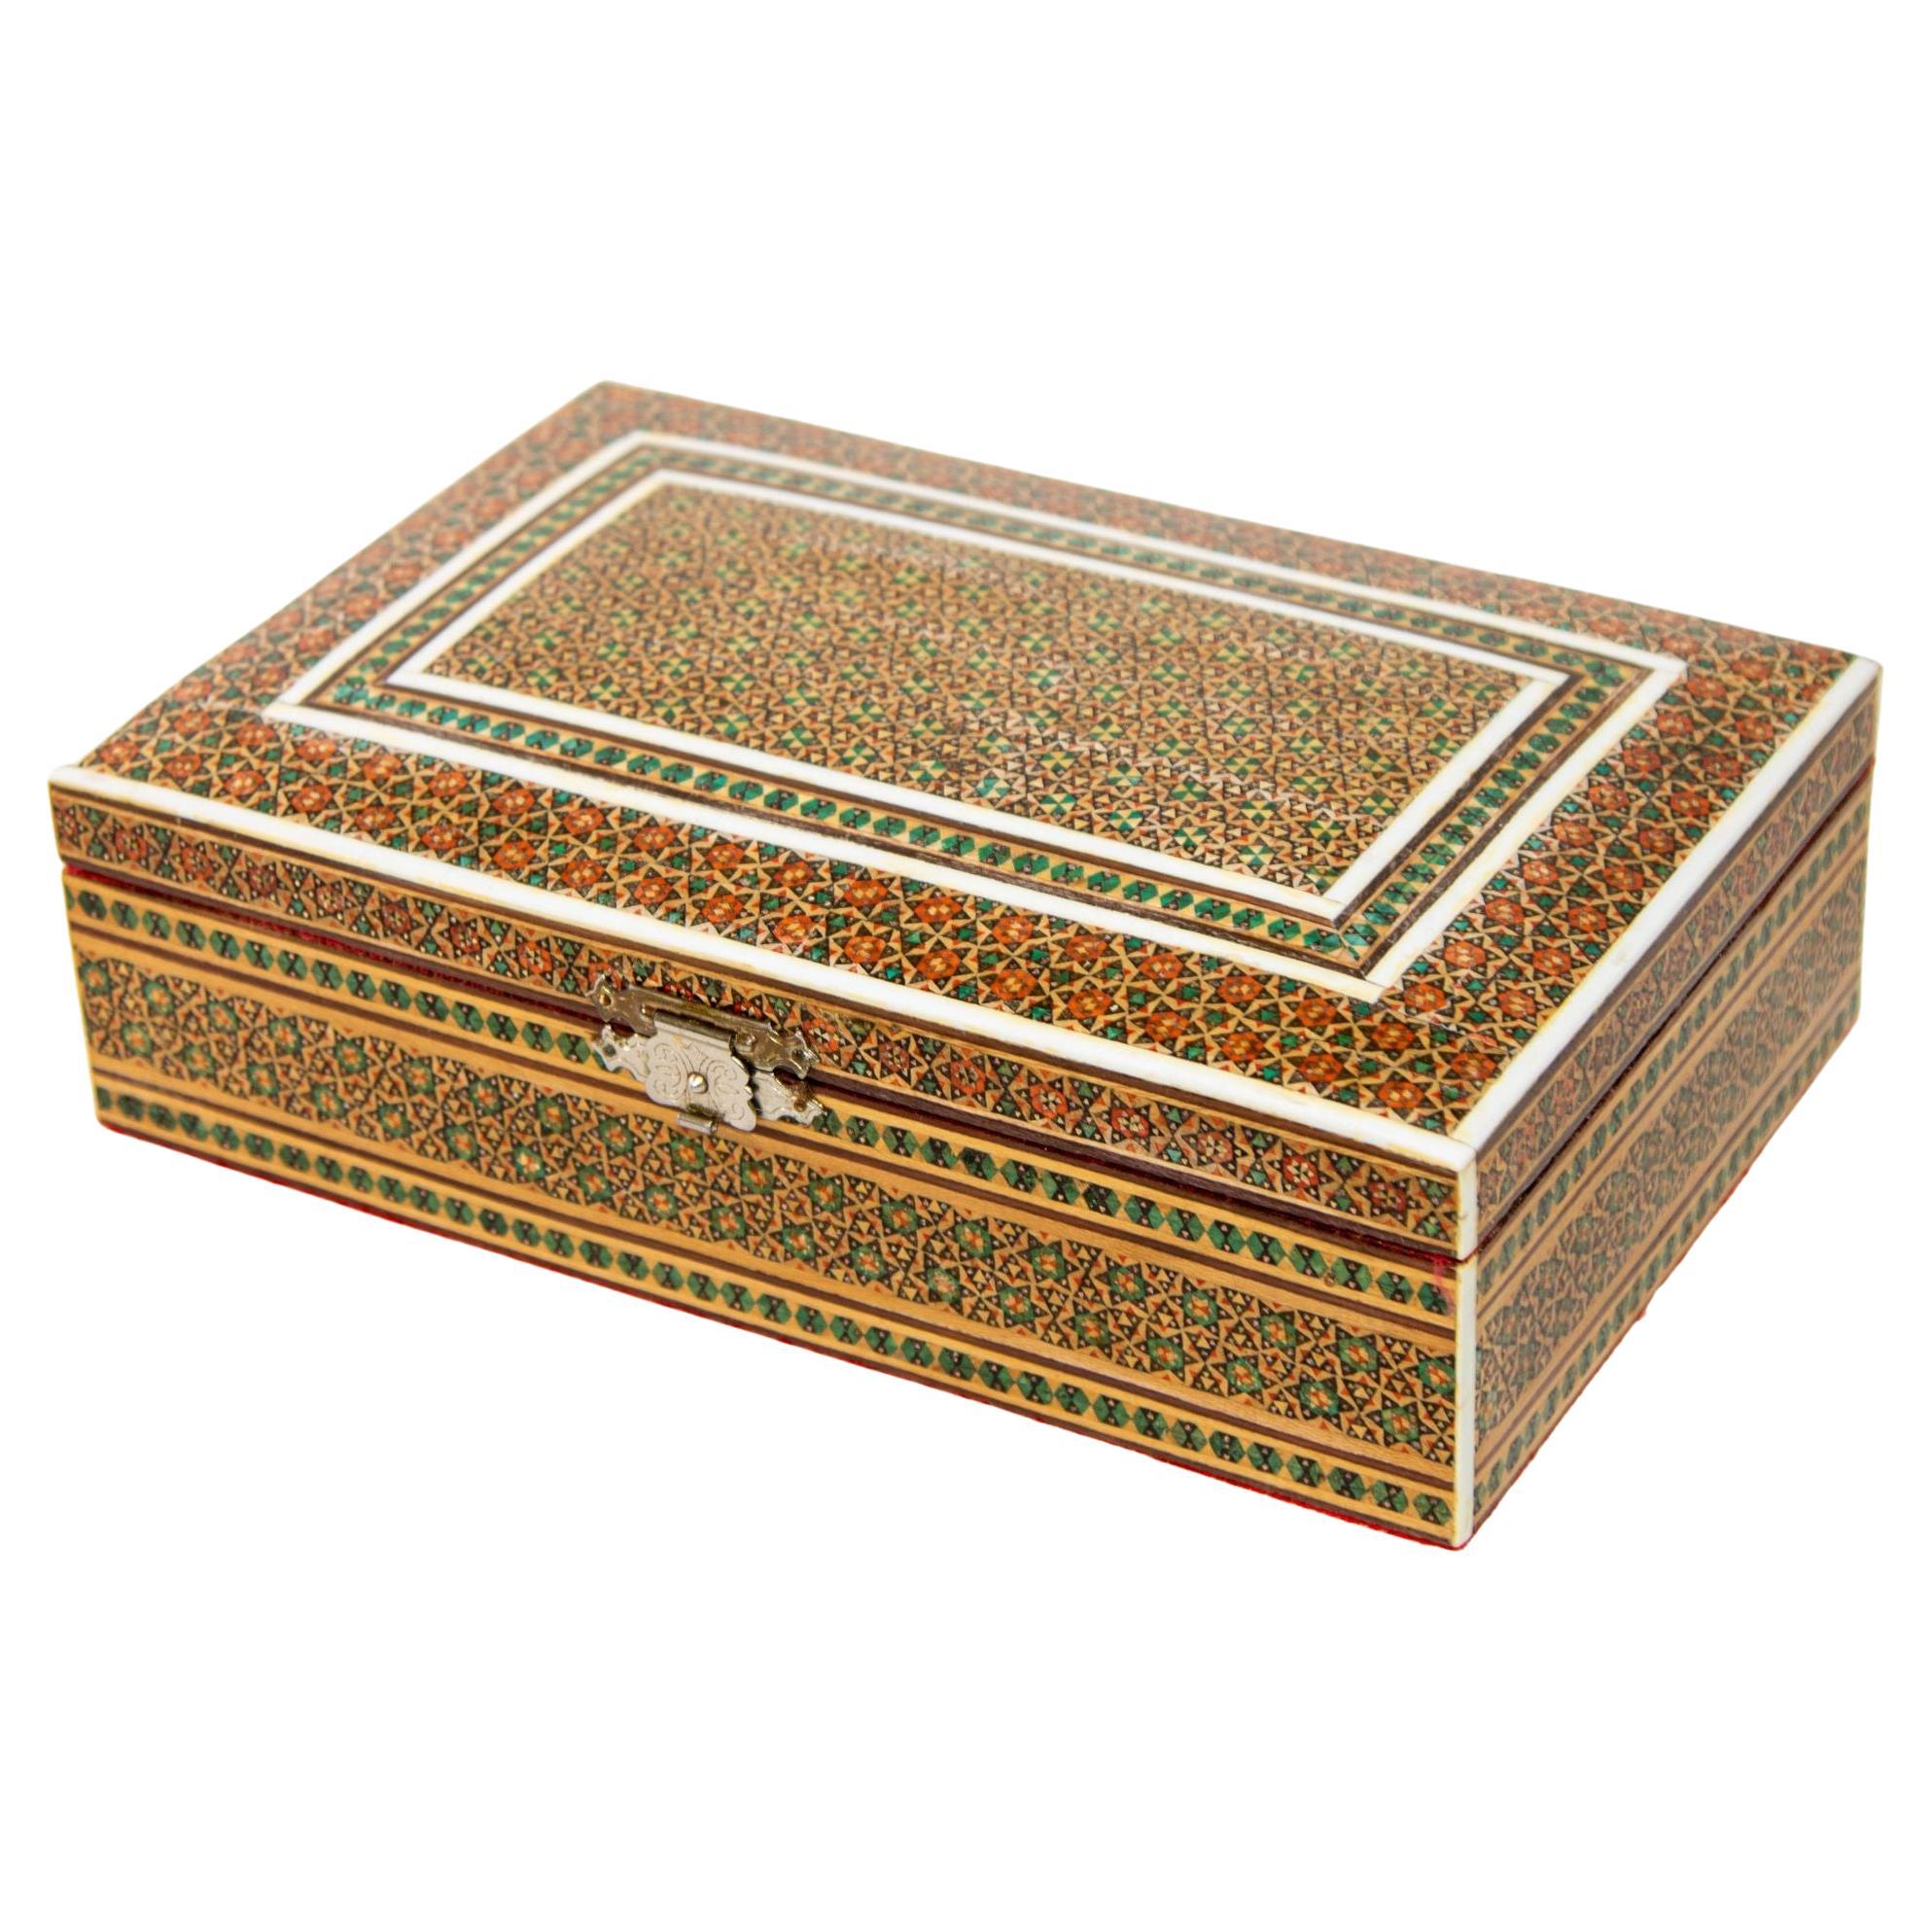 Boîte à bijoux persane du Moyen-Orient en micro-mosaïque incrustée de kaki